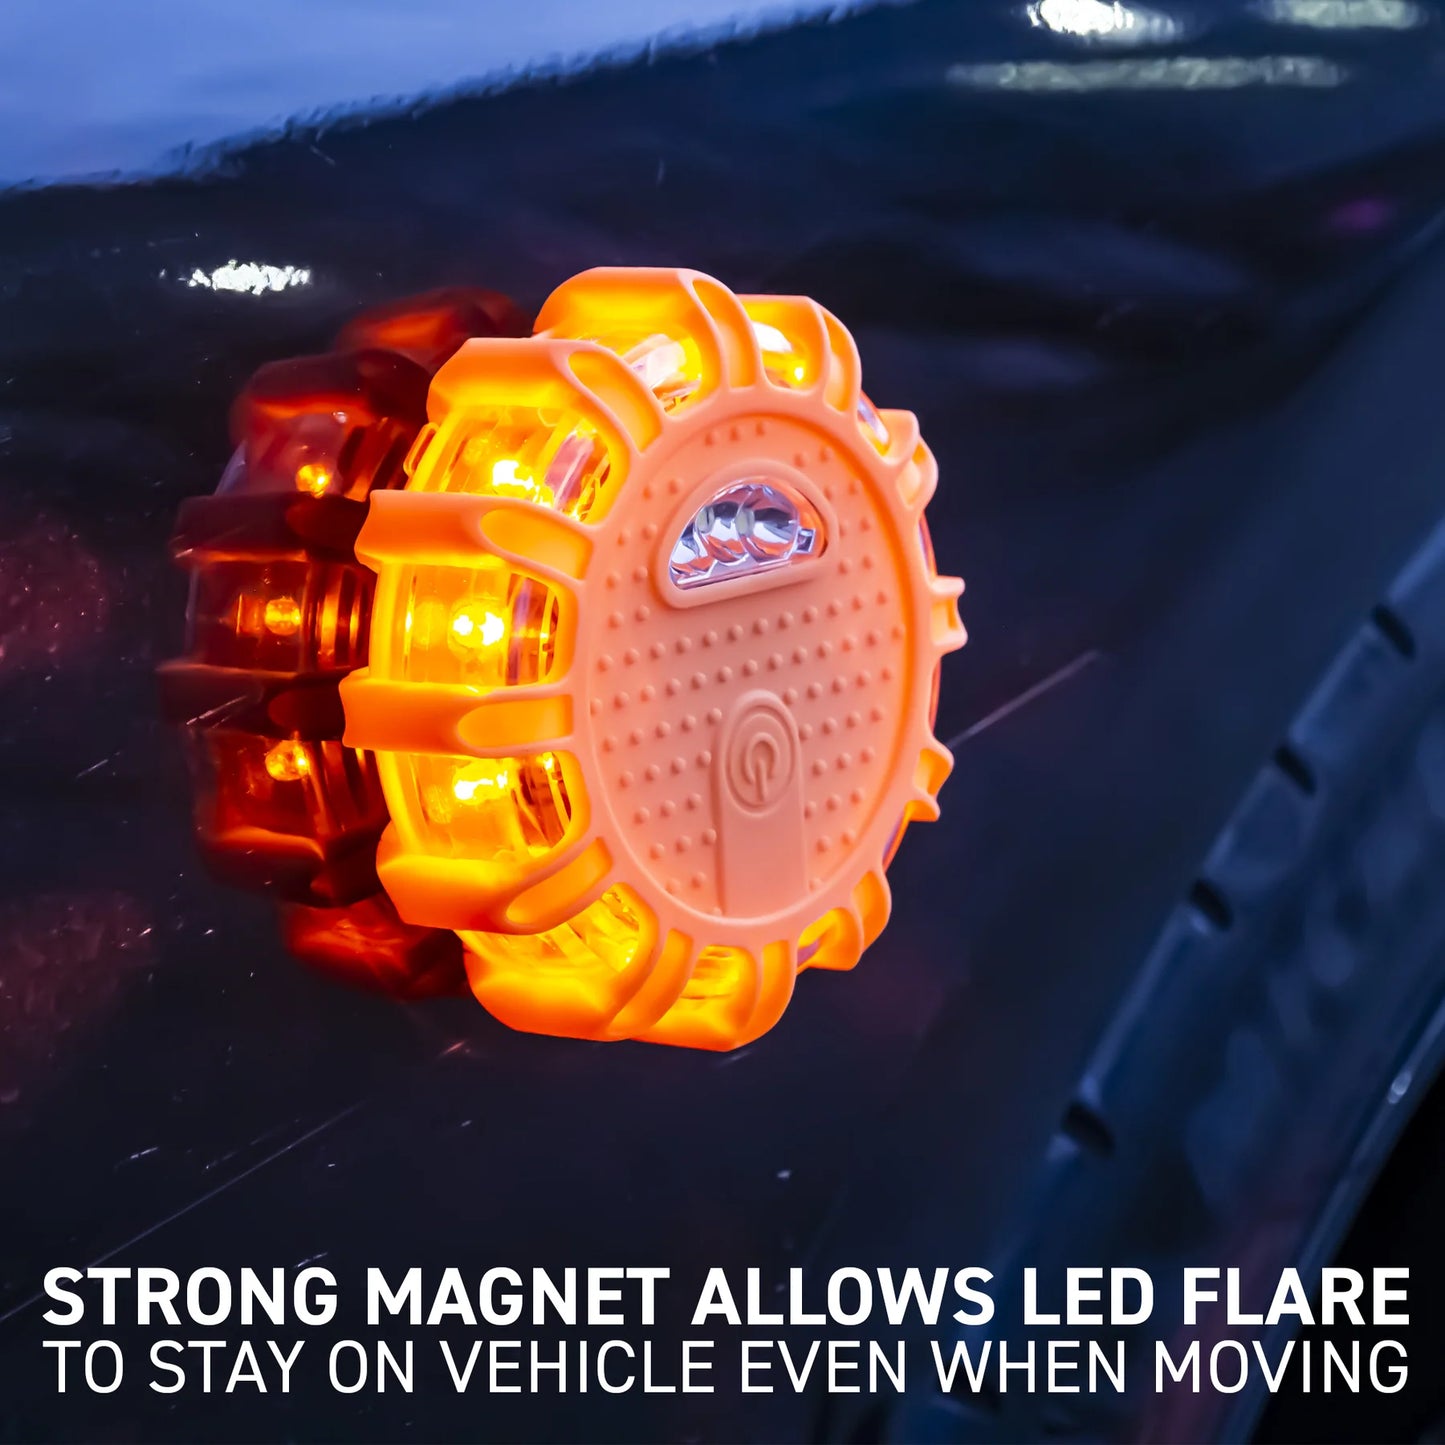 3 Pcs LED Emergency Road Flare with Orange Bag